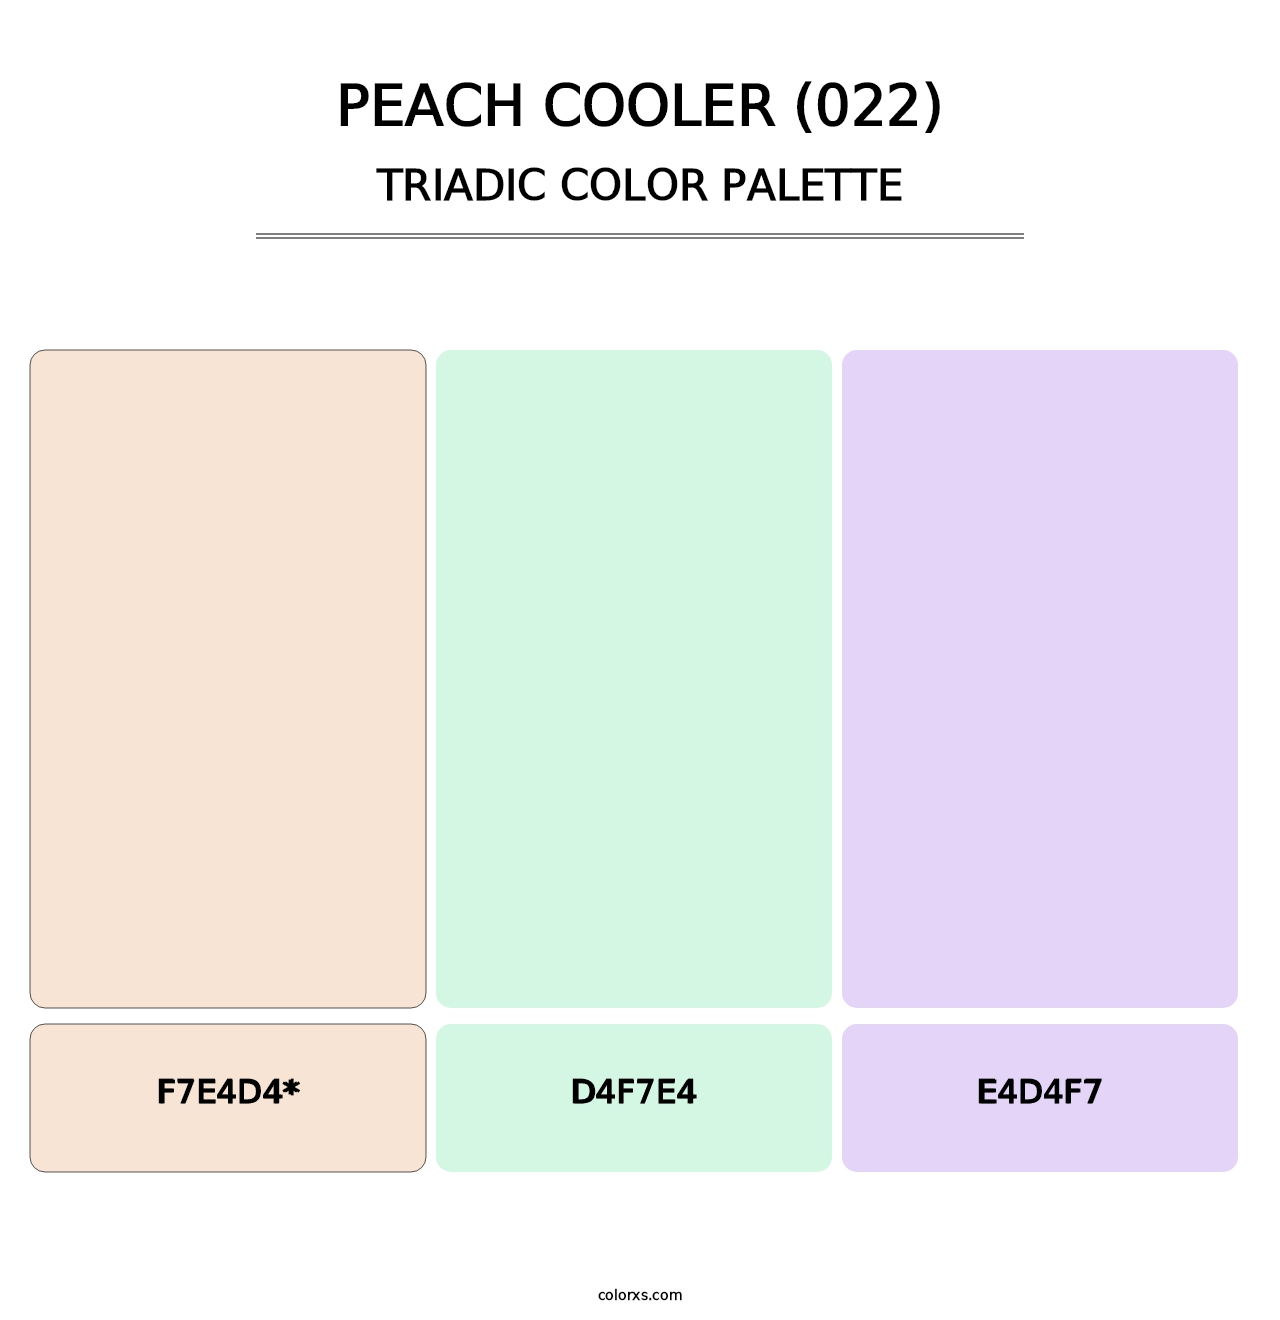 Peach Cooler (022) - Triadic Color Palette